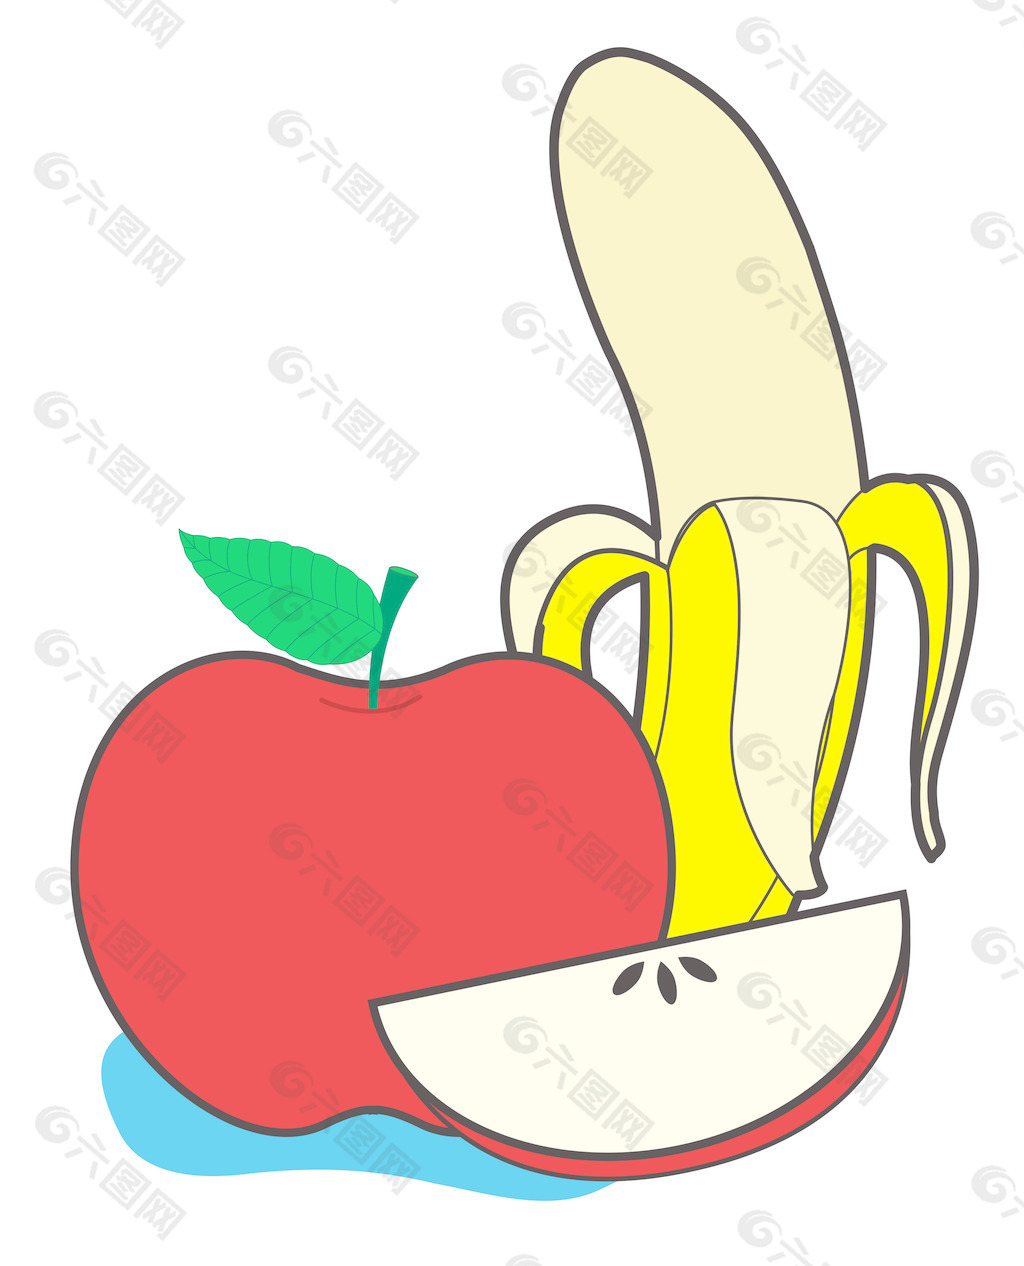 香蕉和苹果矢量